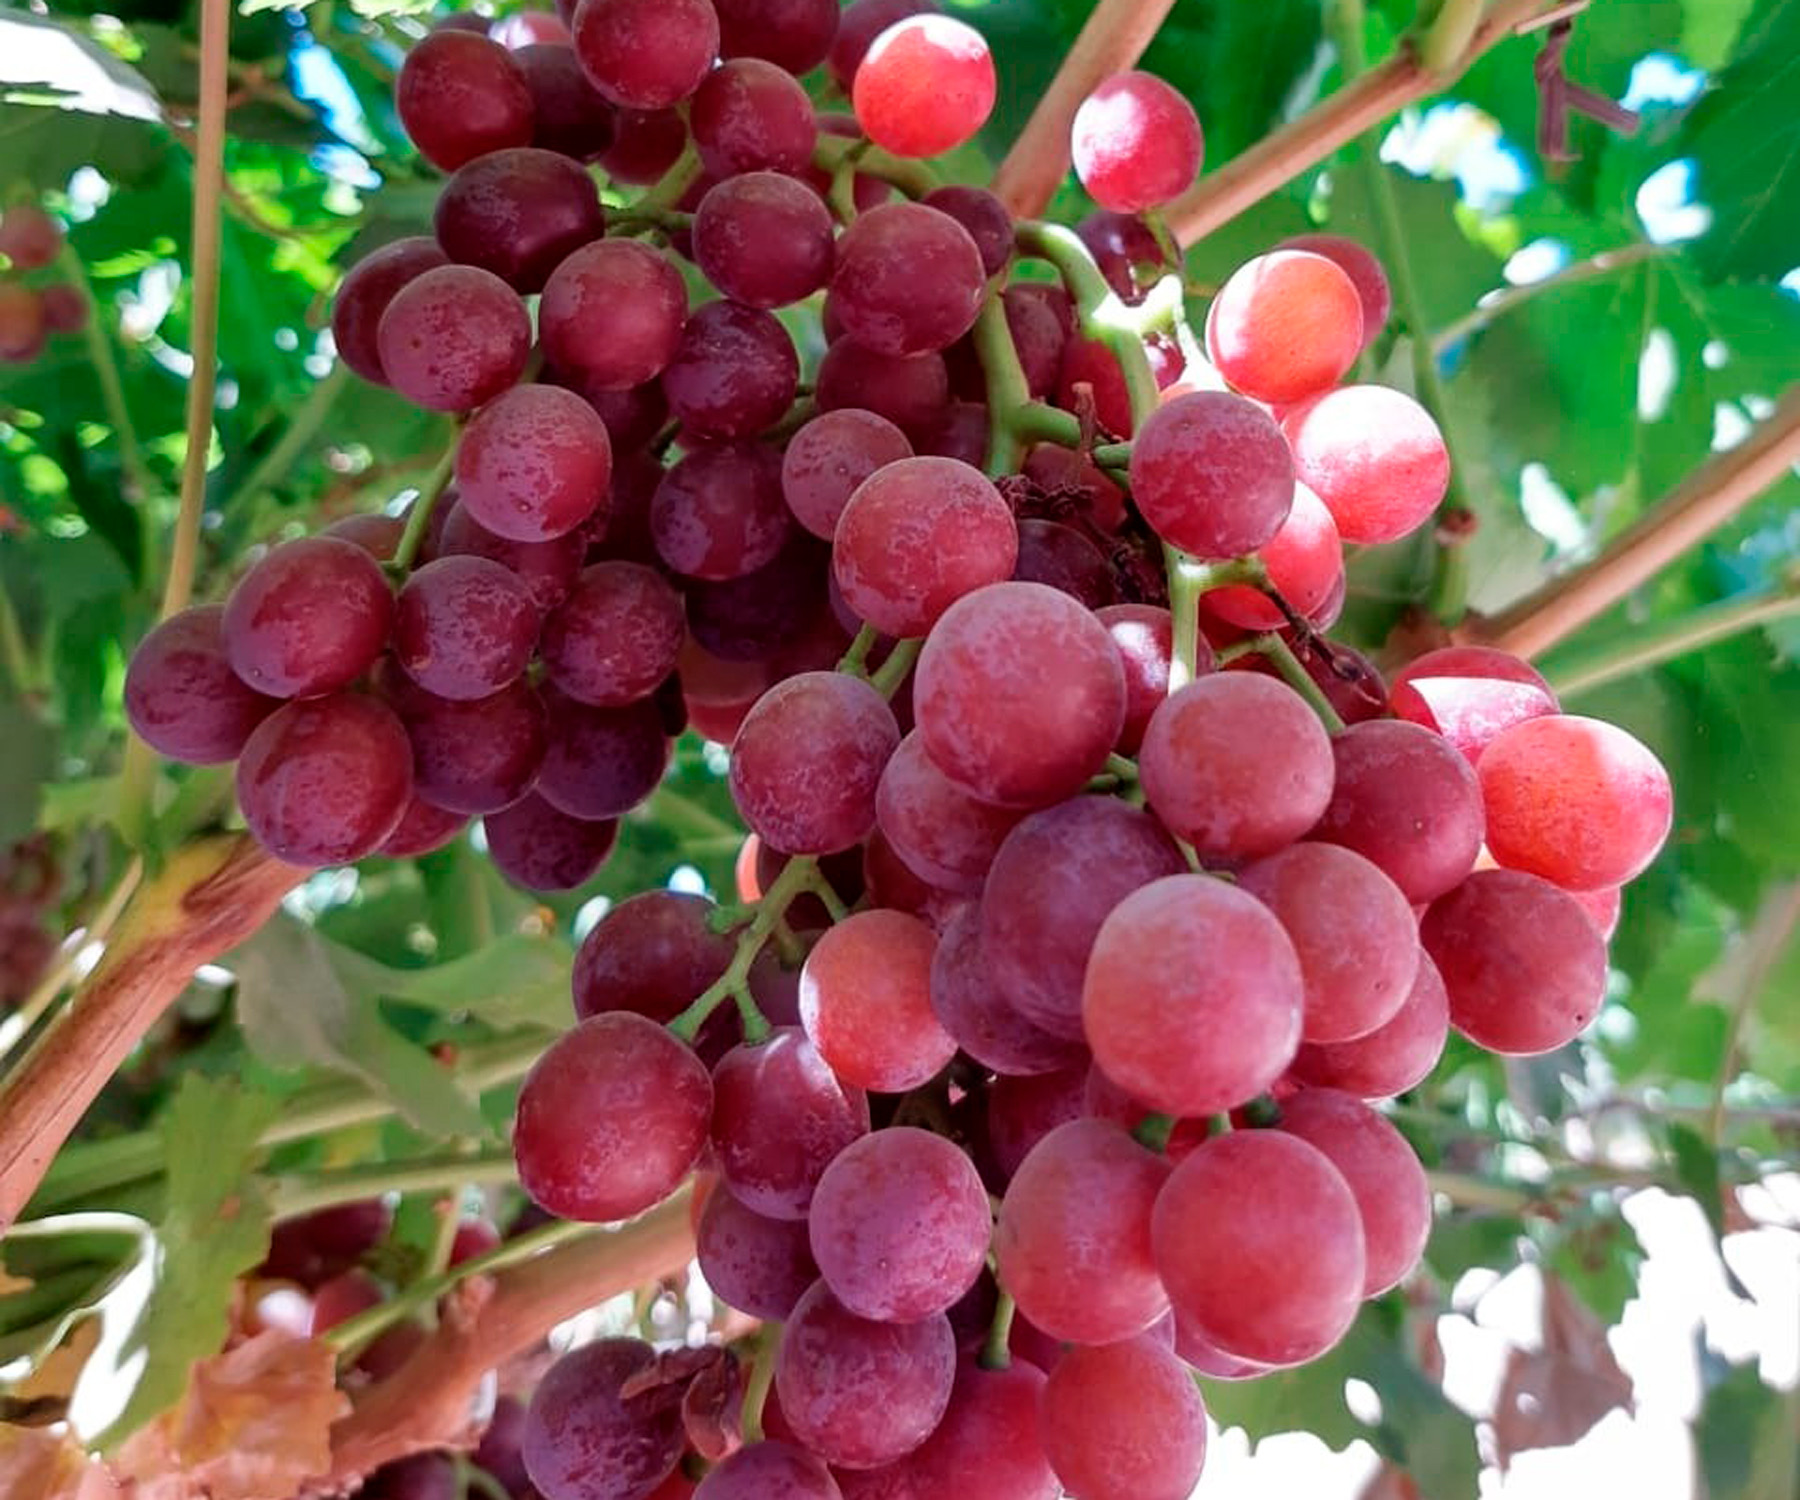 De acuerdo con datos del Servicio de Información Agroalimentaria y Pesquera (SIAP), los consumidores finales de uva fruta pueden encontrar los precios más bajos y la mayor disponibilidad de mayo a agosto de cada año, ya que en estos meses se cosecha más